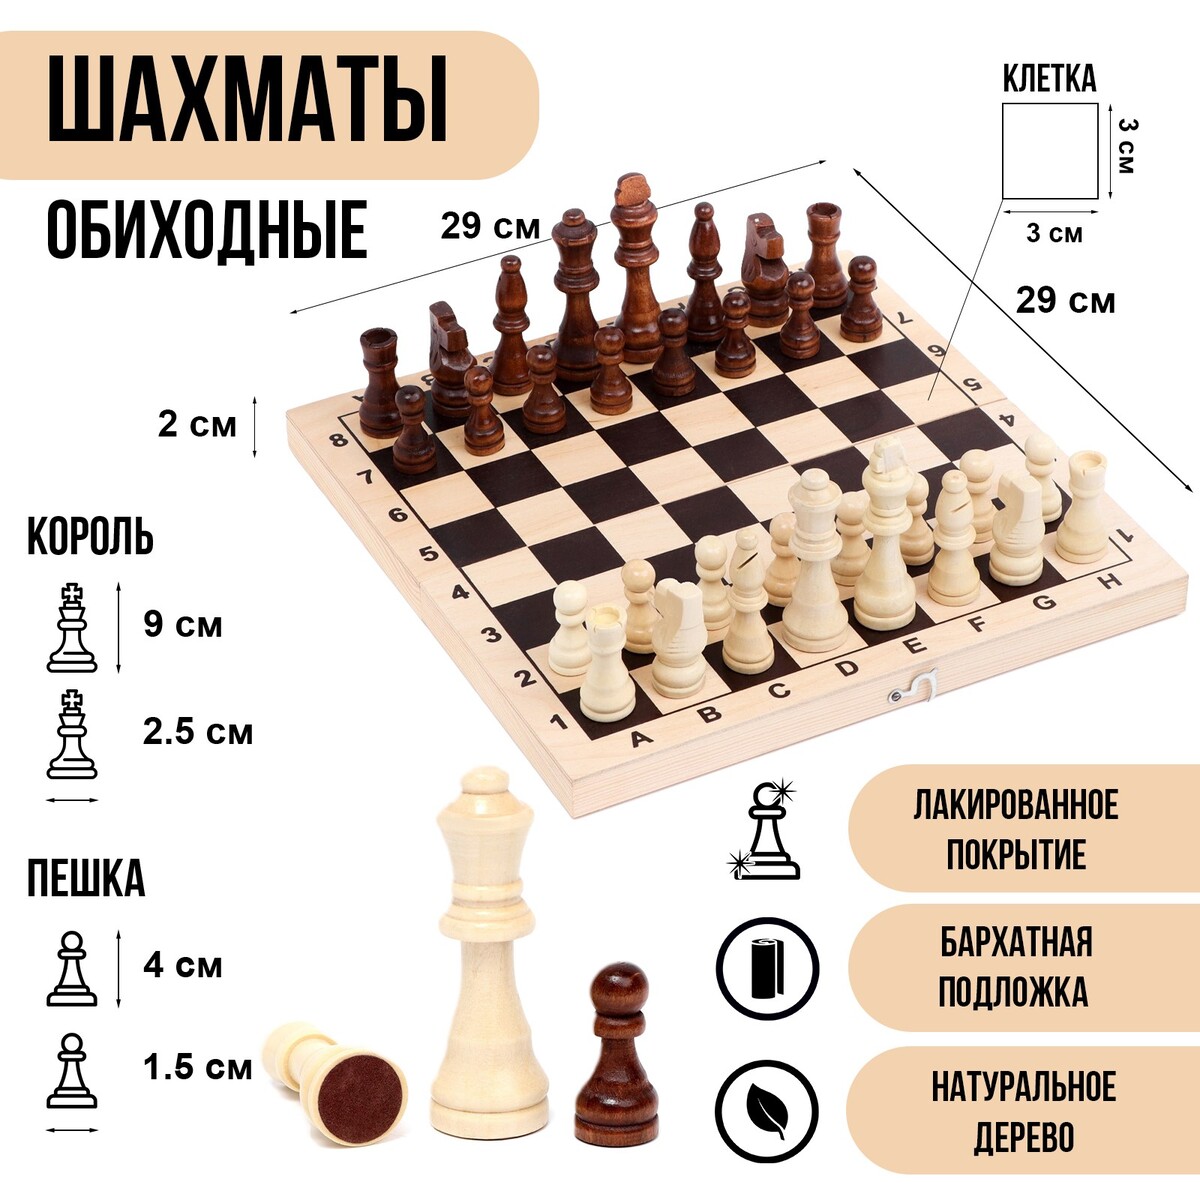 Шахматы деревянные обиходные 29 х 29 см, король h-9 см, пешка h-4 см шахматы обиходные классика